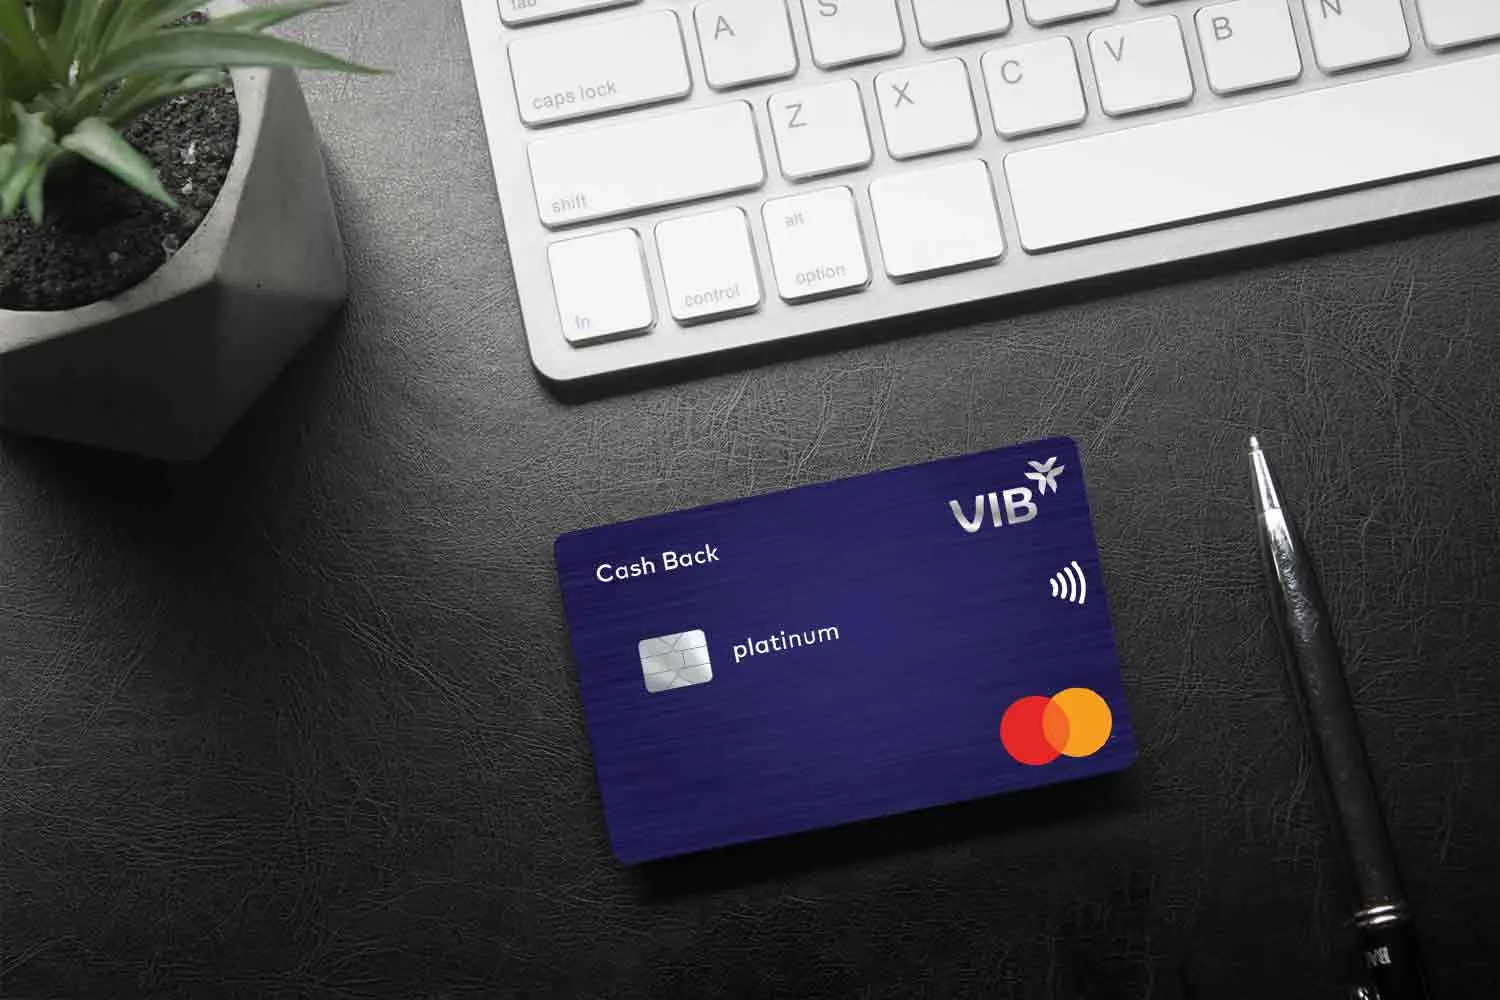 Mua hàng trả góp qua thẻ tín dụng là gì?